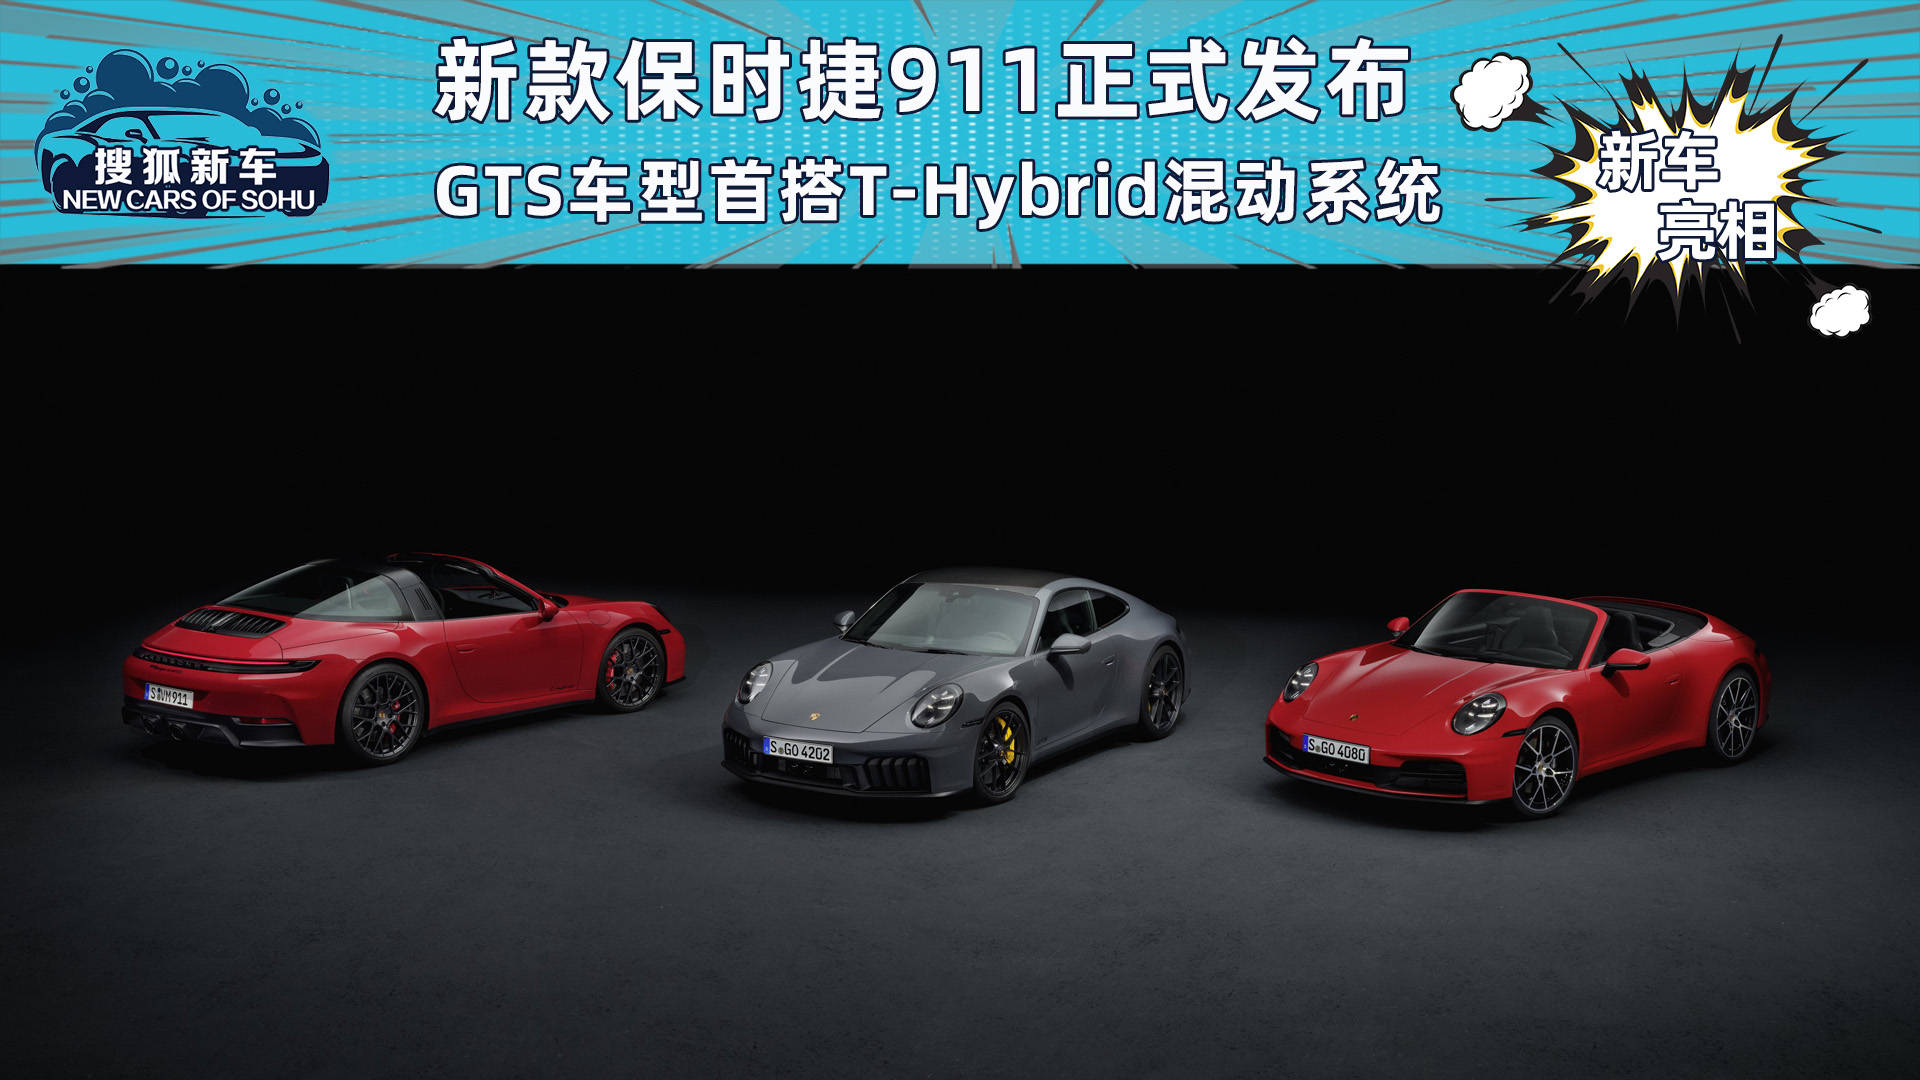 全新保时捷911正式发布首款T-Hybrid混合动力系统GTS车型_搜狐汽车_ Sohu.com